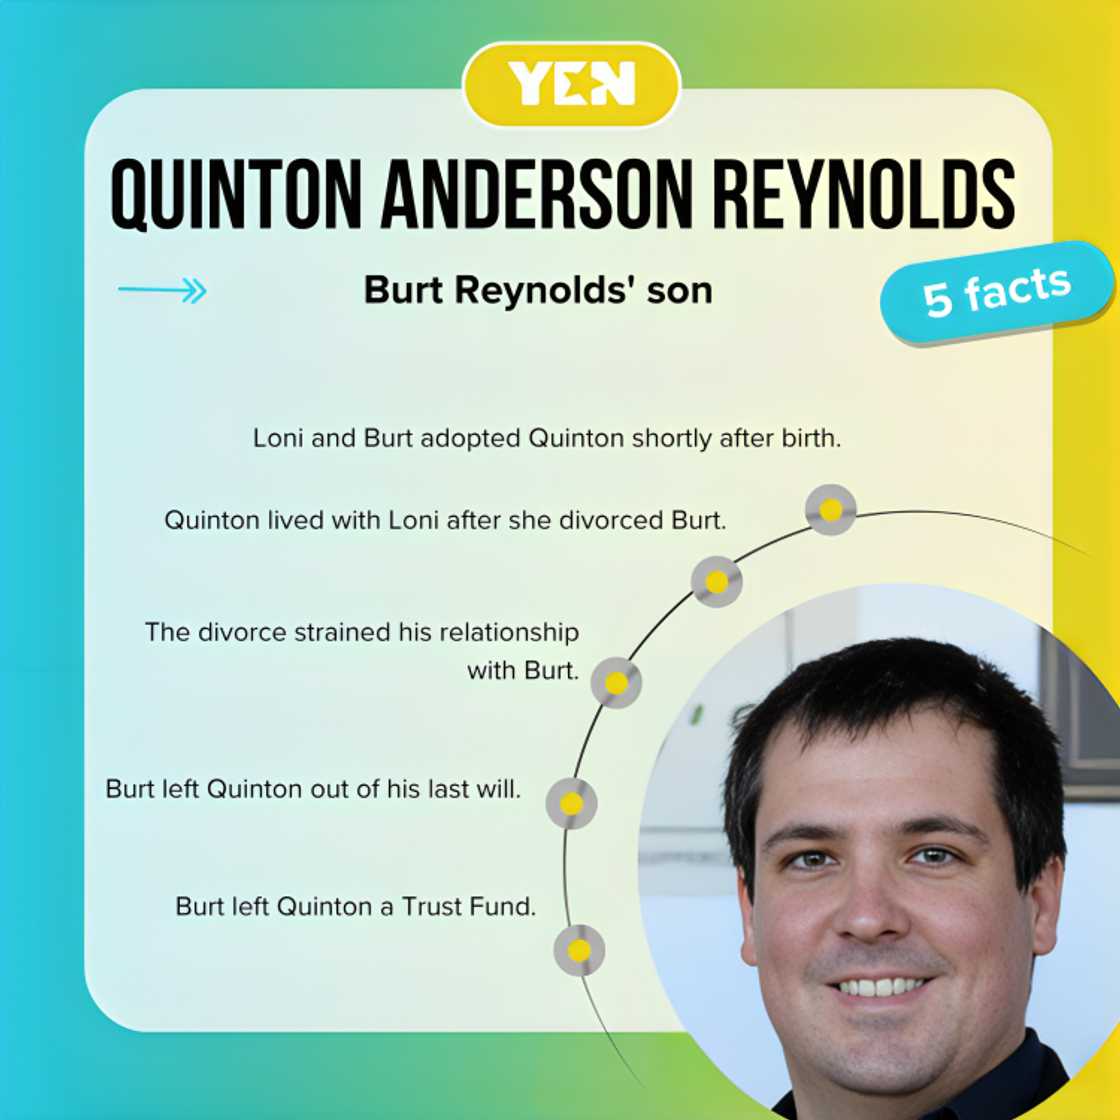 Quinton Anderson Reynolds